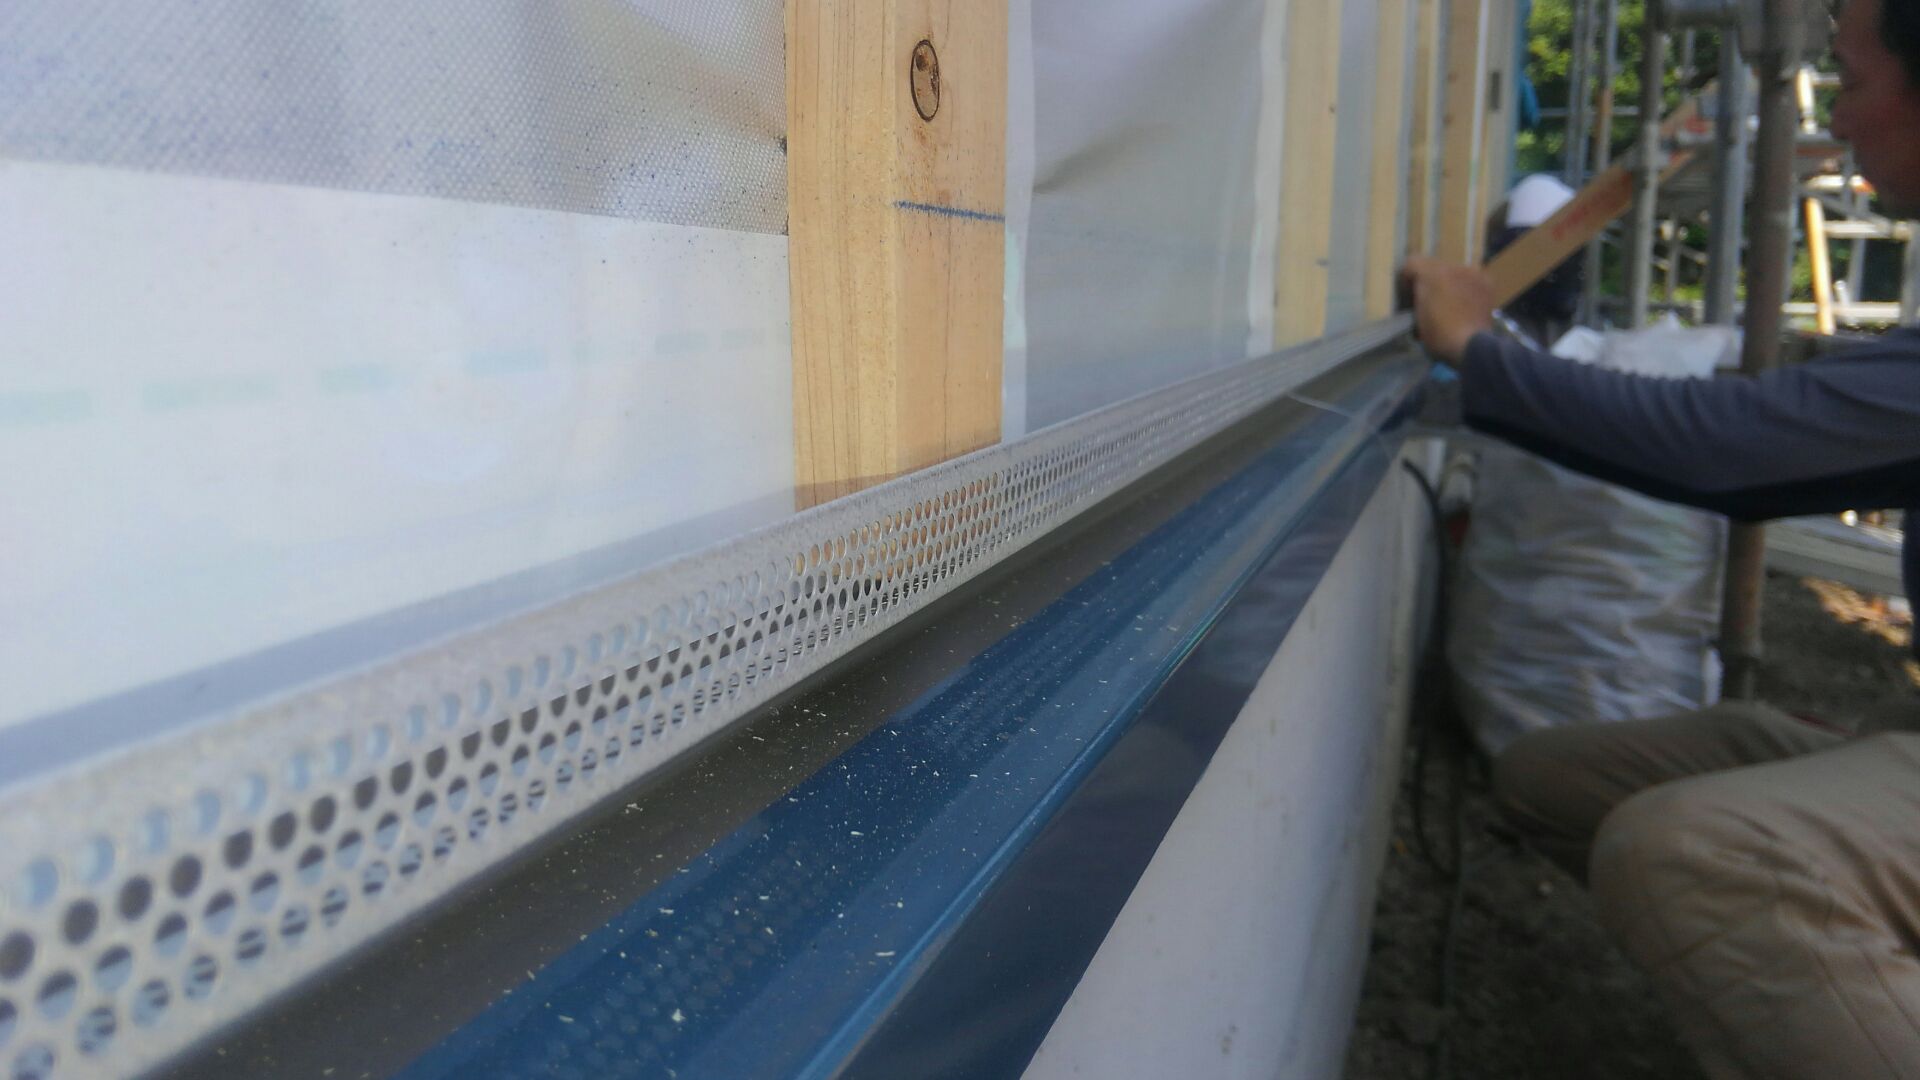 虫が入らないように防虫網を取り付けます。間もなく外部には、セメントと木質系成分を混合して製造される外壁材を使用した窯業（ようぎょう）系サイディング工事のはじまりはじまり。仕上がりが楽しみです♪